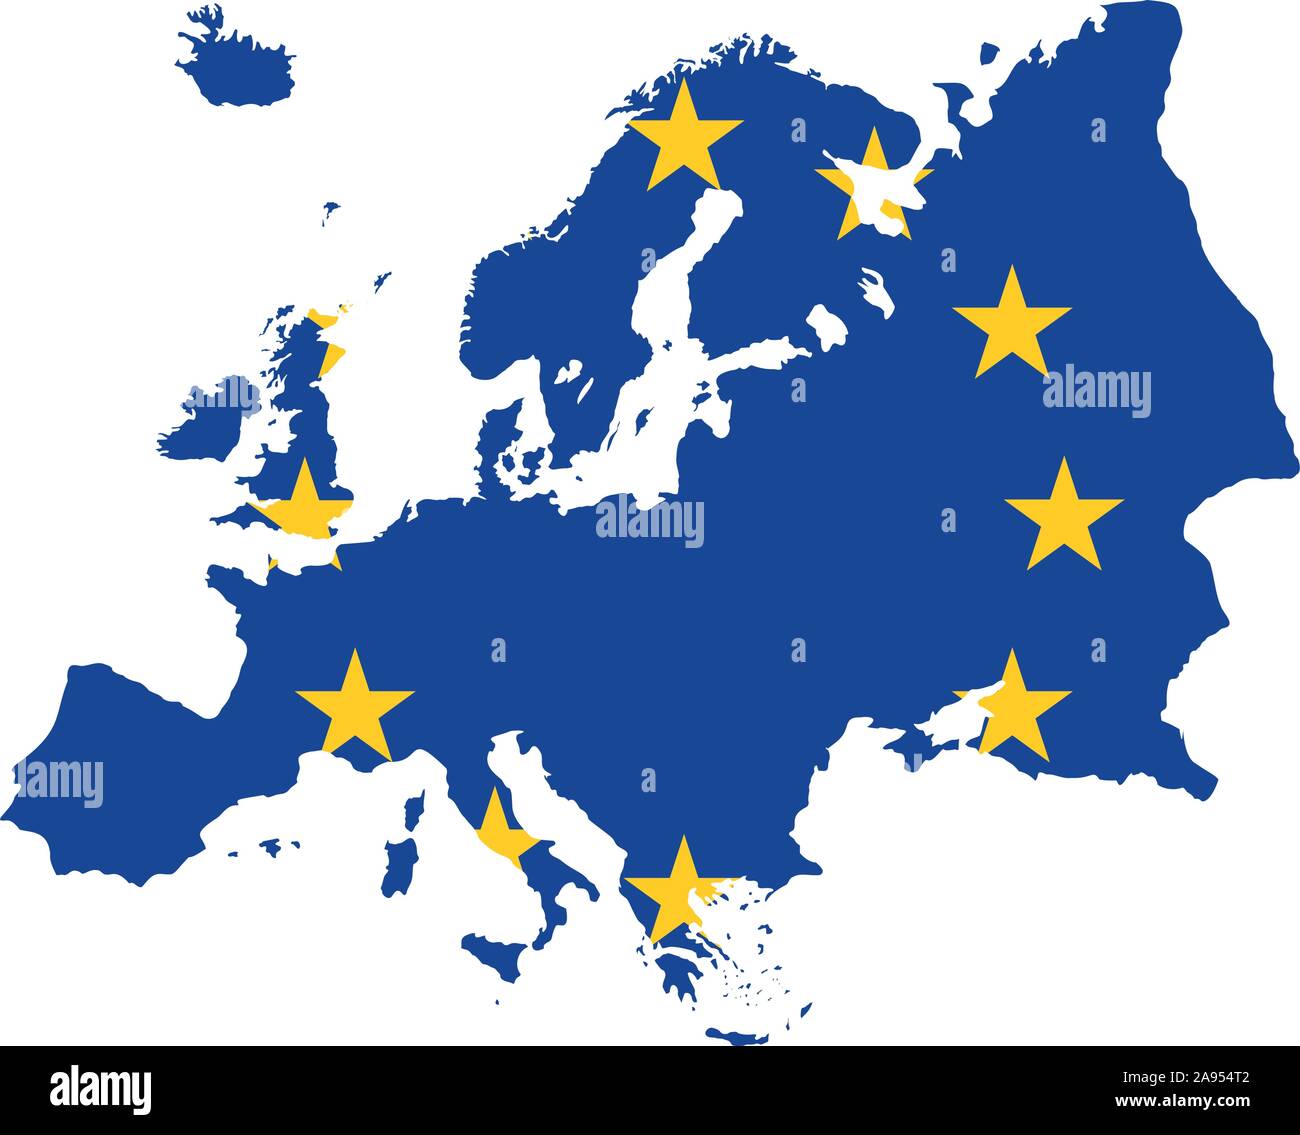 Die Europäische Blaue Karte von Europa mit der EU Sterne in Gelb. Stock Vektor